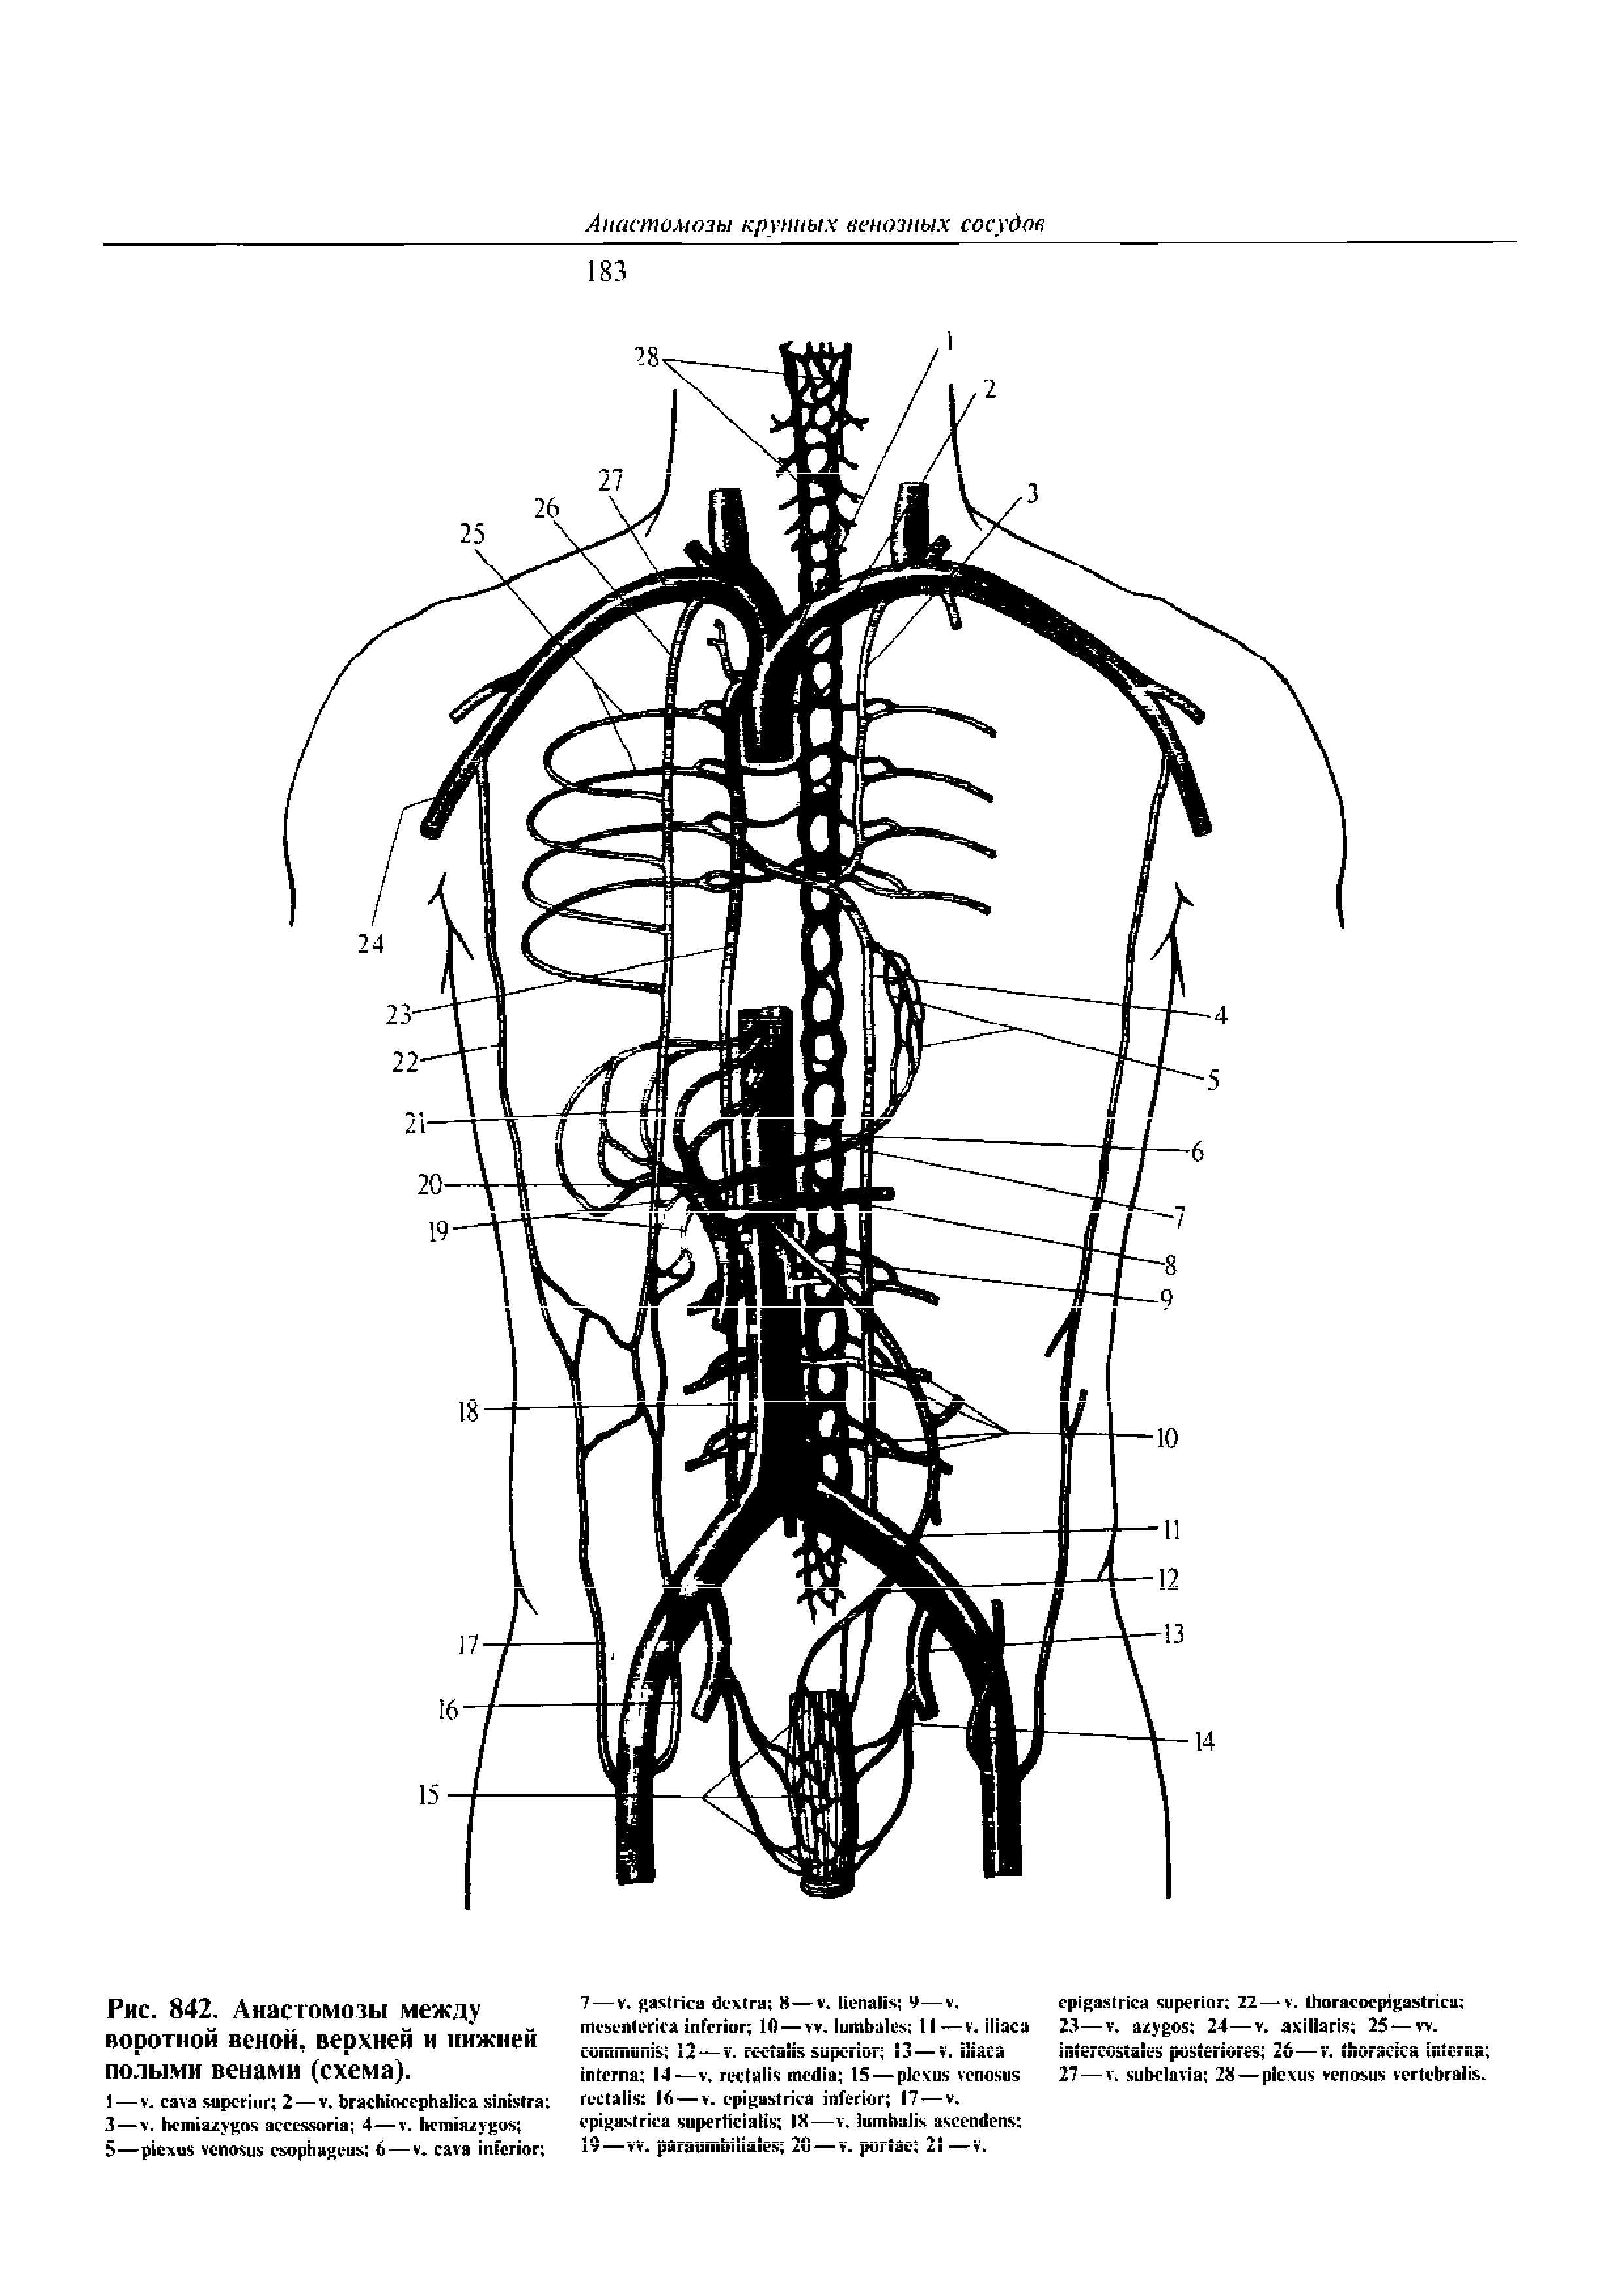 Рис. 842. Анастомозы между воротной венок, верхней и нижней полыми венами (схема).